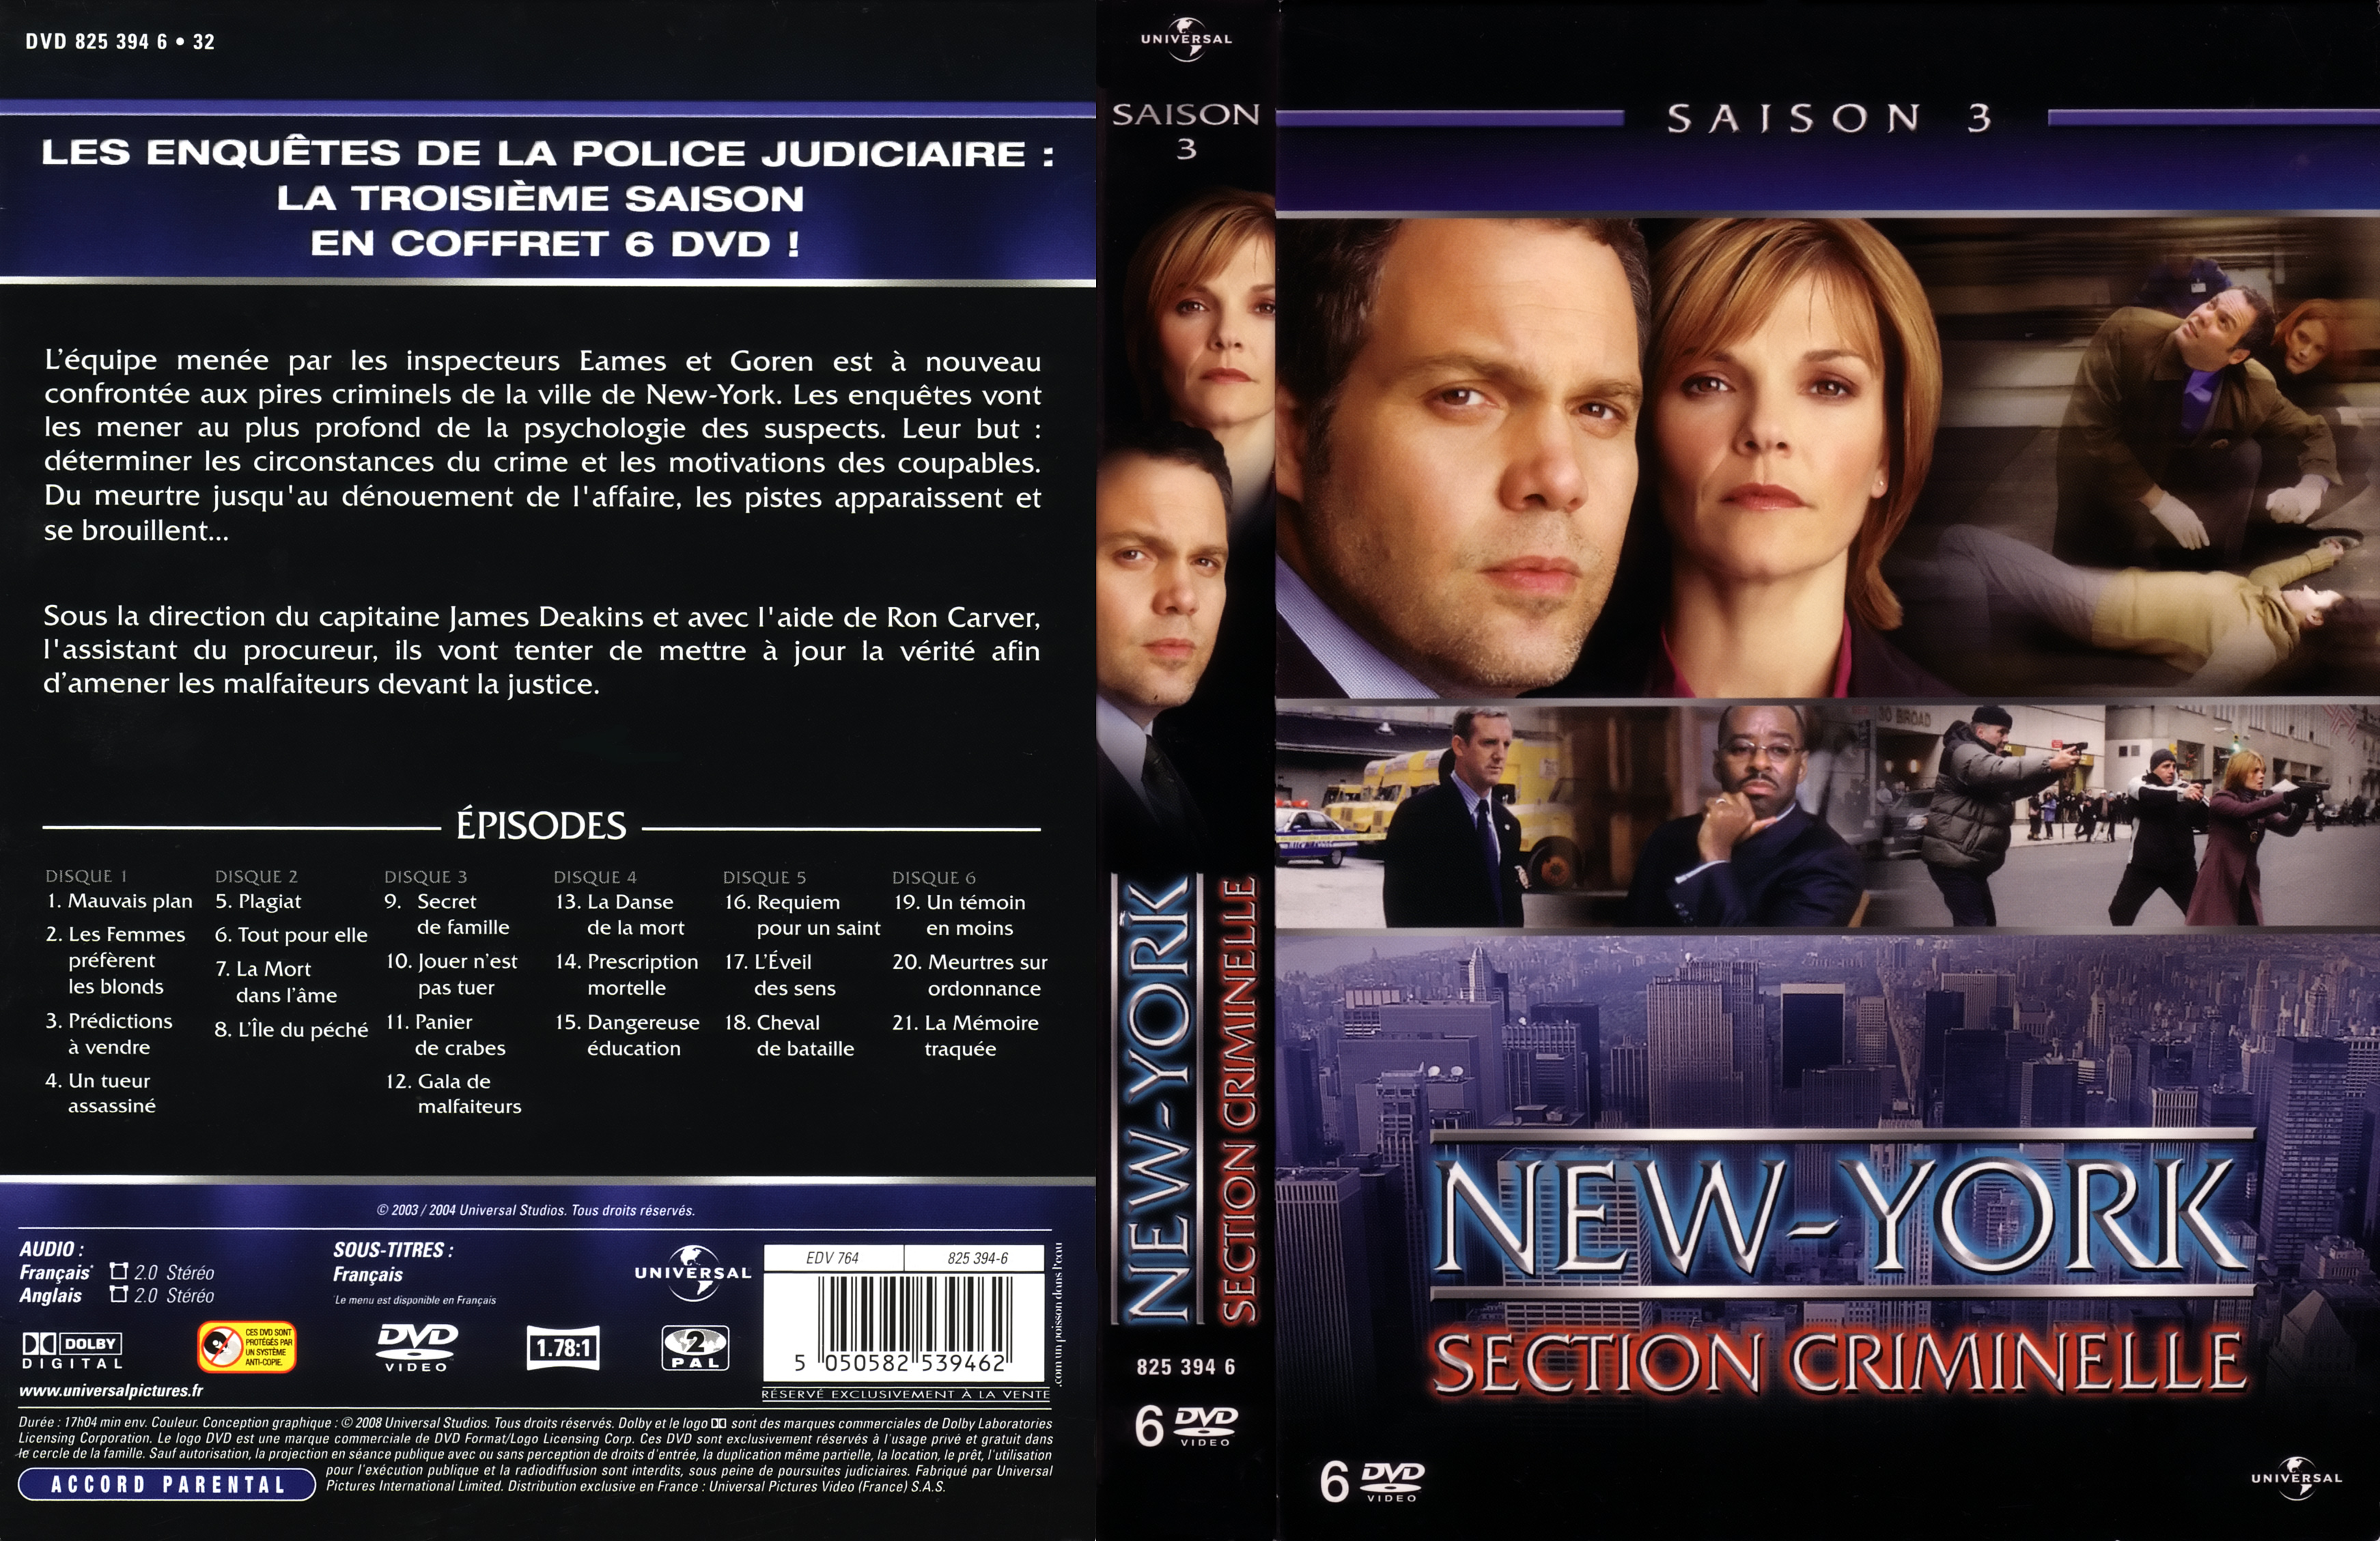 Jaquette DVD New York section criminelle saison 3 COFFRET